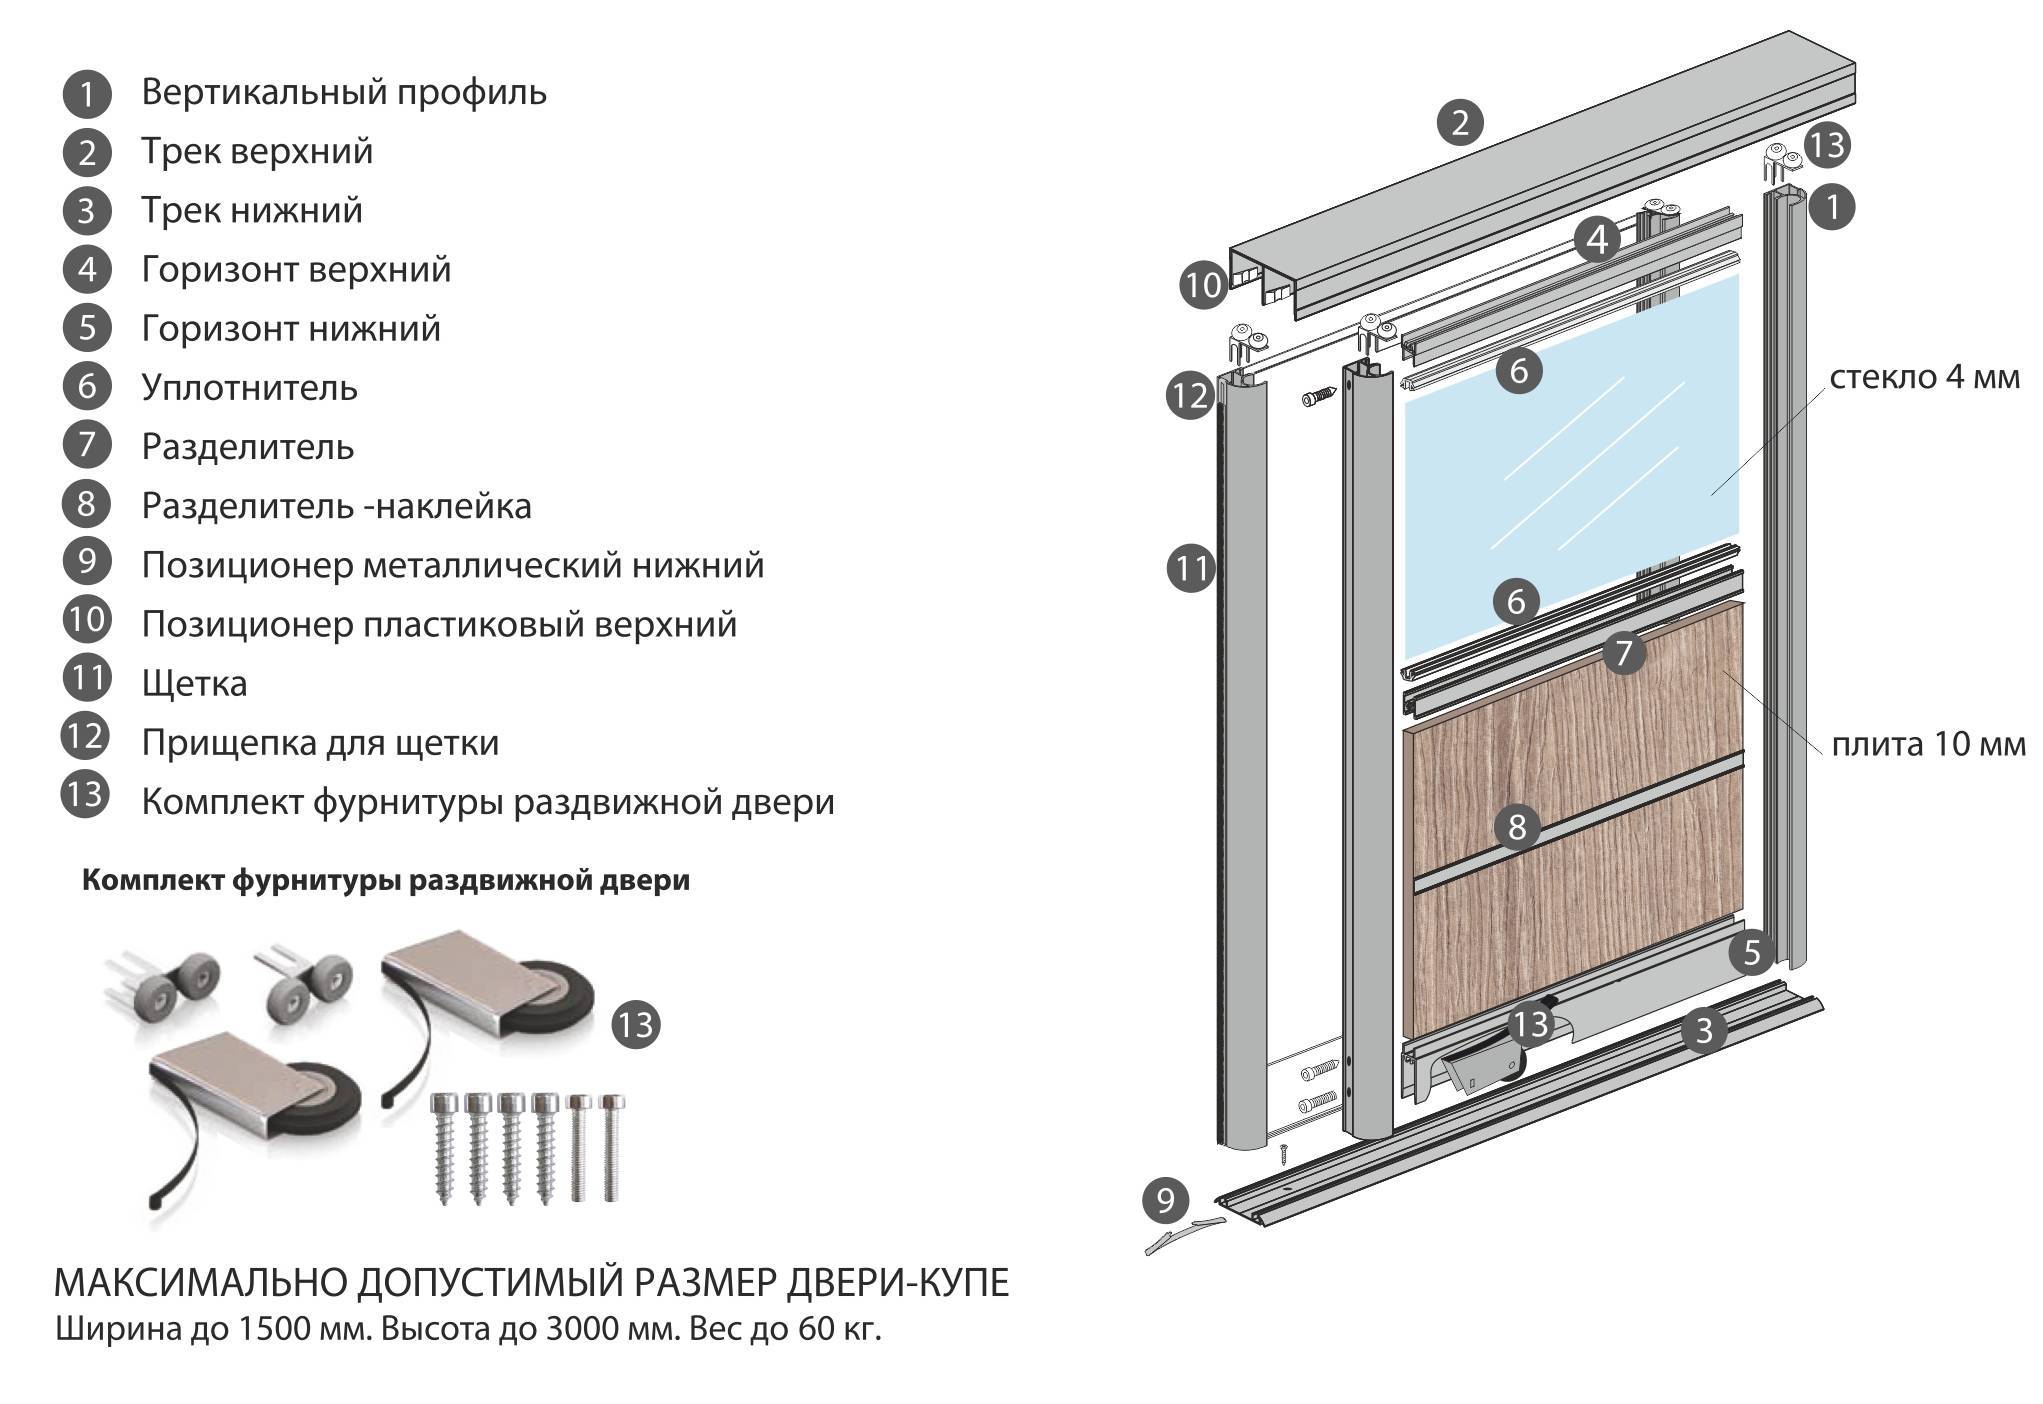 Раздвижные межкомнатные двери (фото): механизм, варианты оформления, особенности фурнитуры